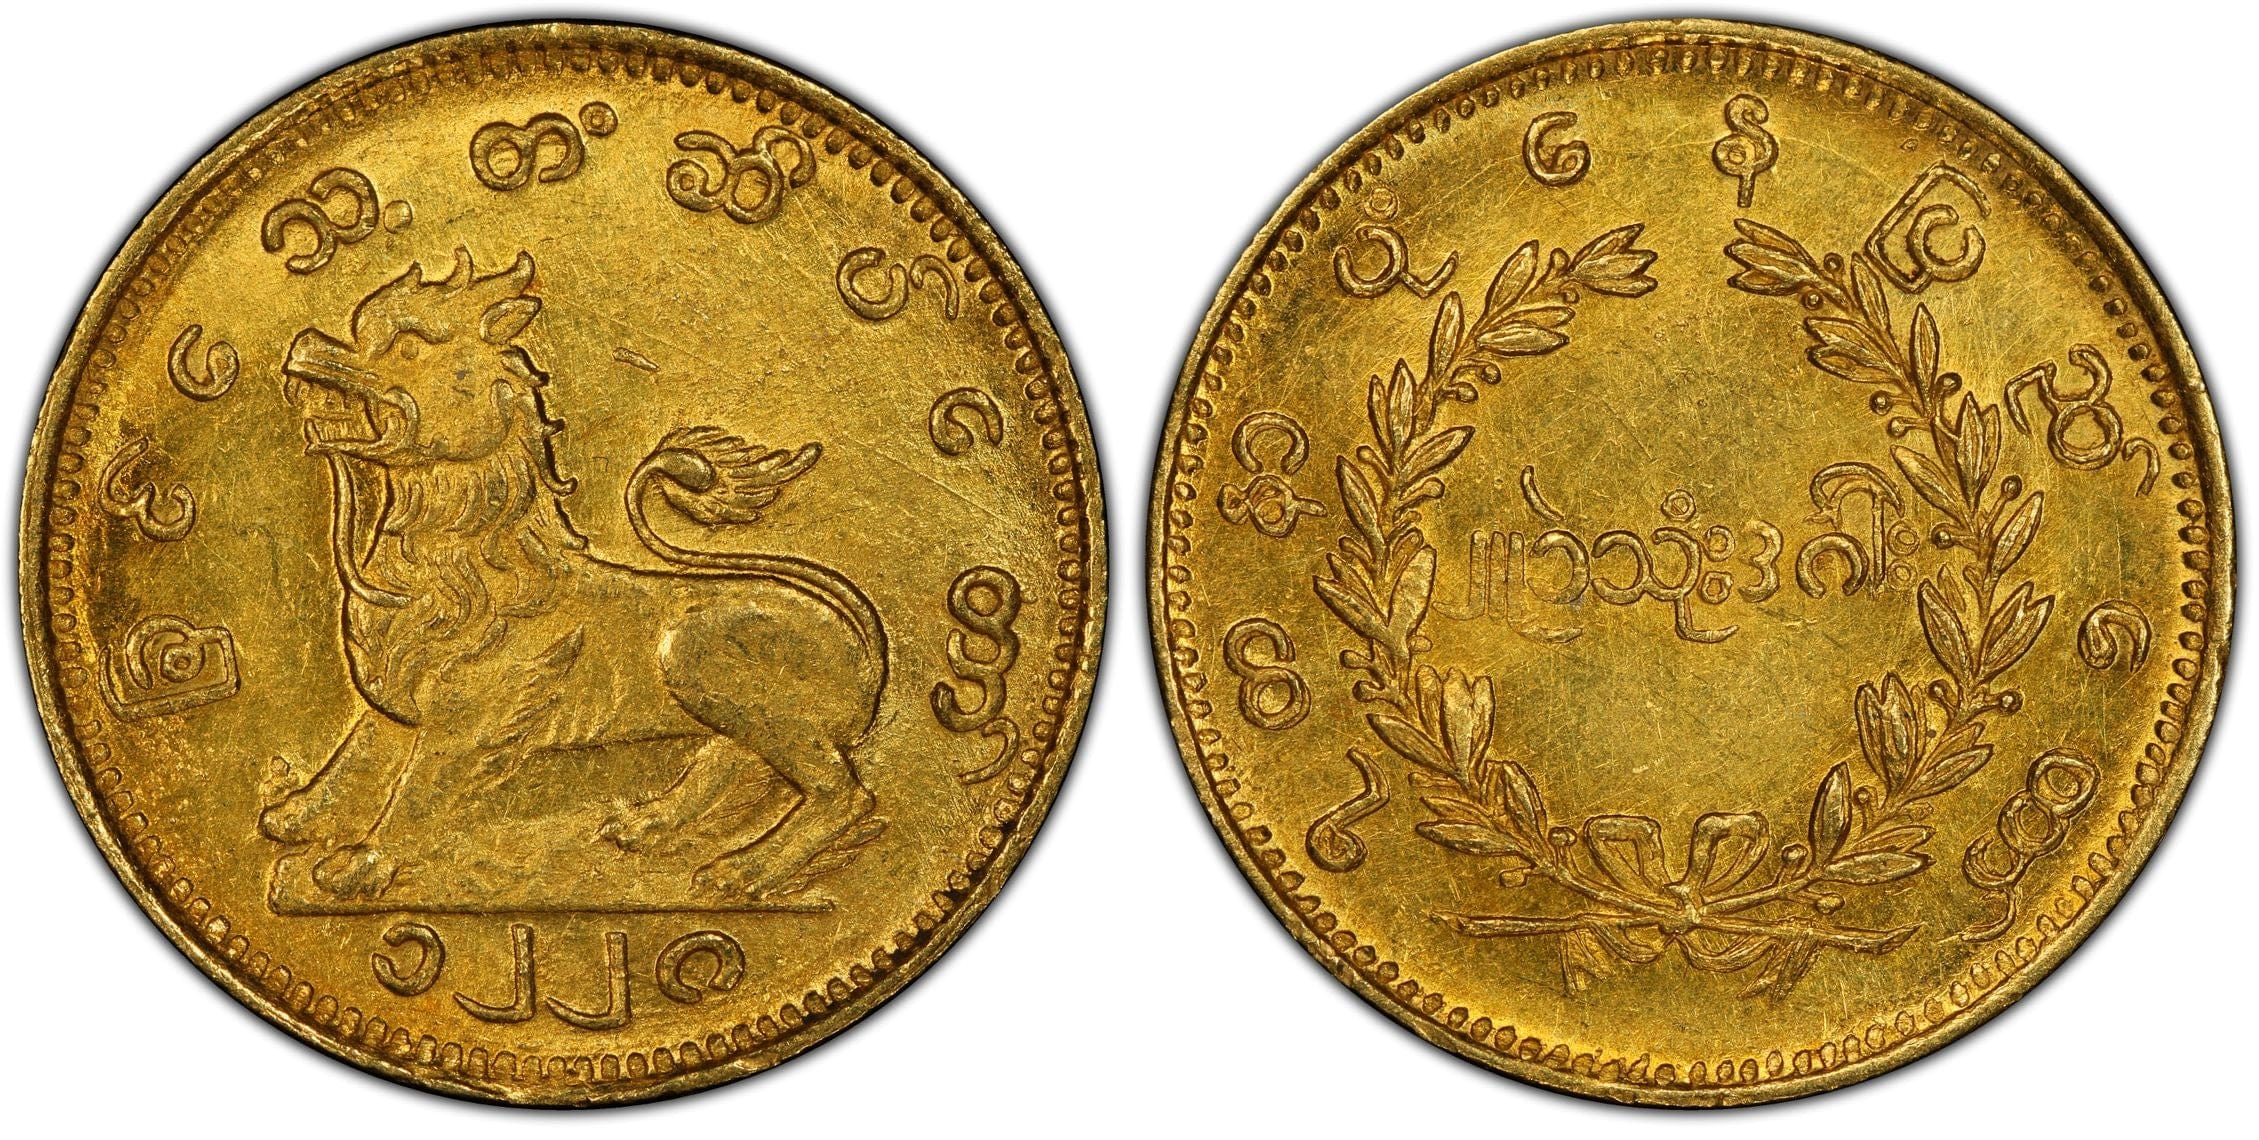 1866年(CS1228年) ビルマ(ミャンマー) 1Pe金貨 UNC Details Cleaned